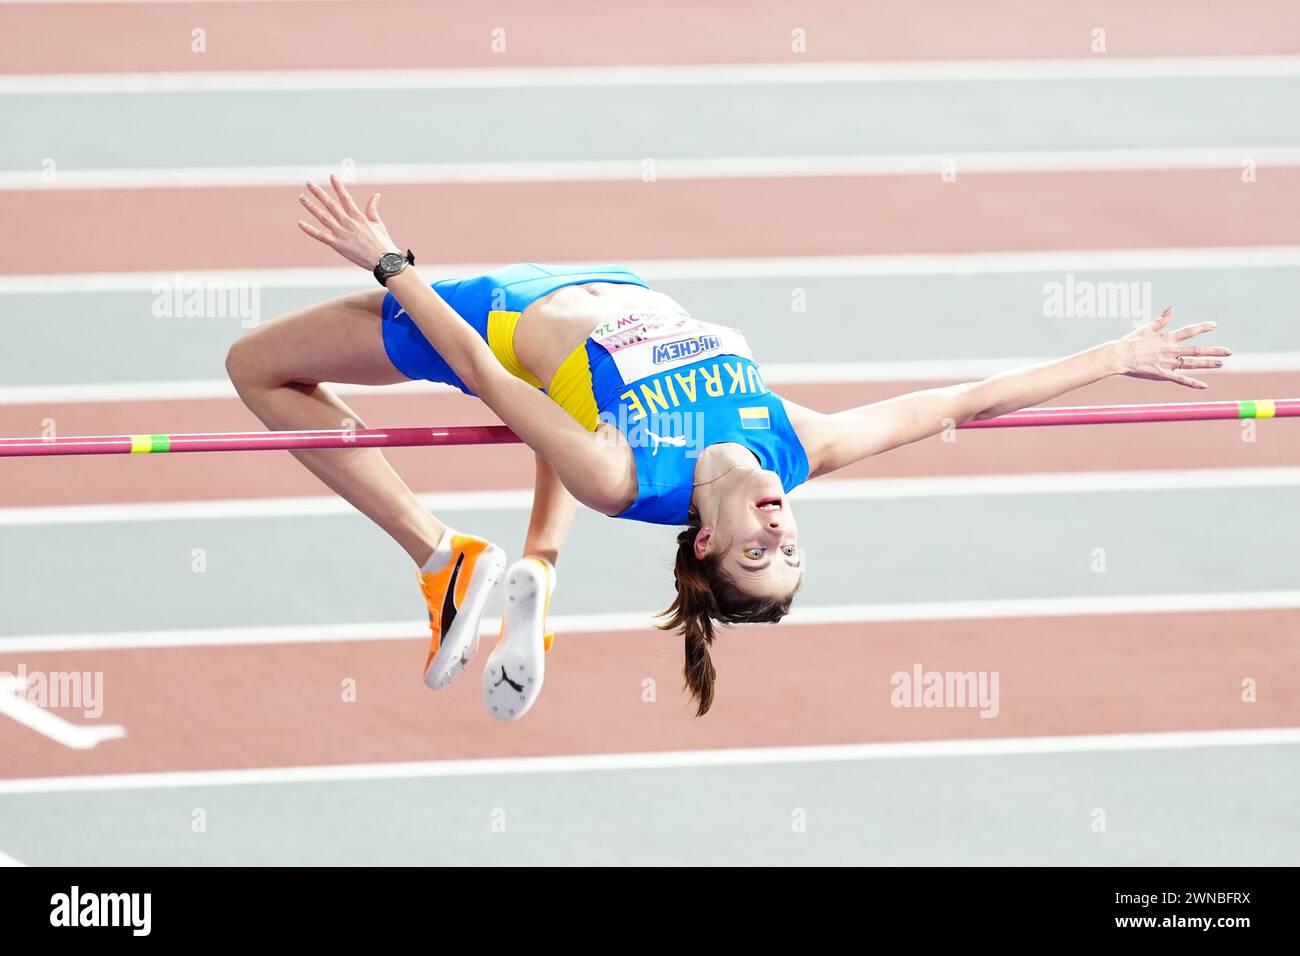 L'ukrainienne Yaroslava Mahuchikh lors de la finale de saut en hauteur féminine lors de la première journée des Championnats du monde d'athlétisme en salle à l'Emirates Arena de Glasgow. Date de la photo : vendredi 1er mars 2024. Banque D'Images